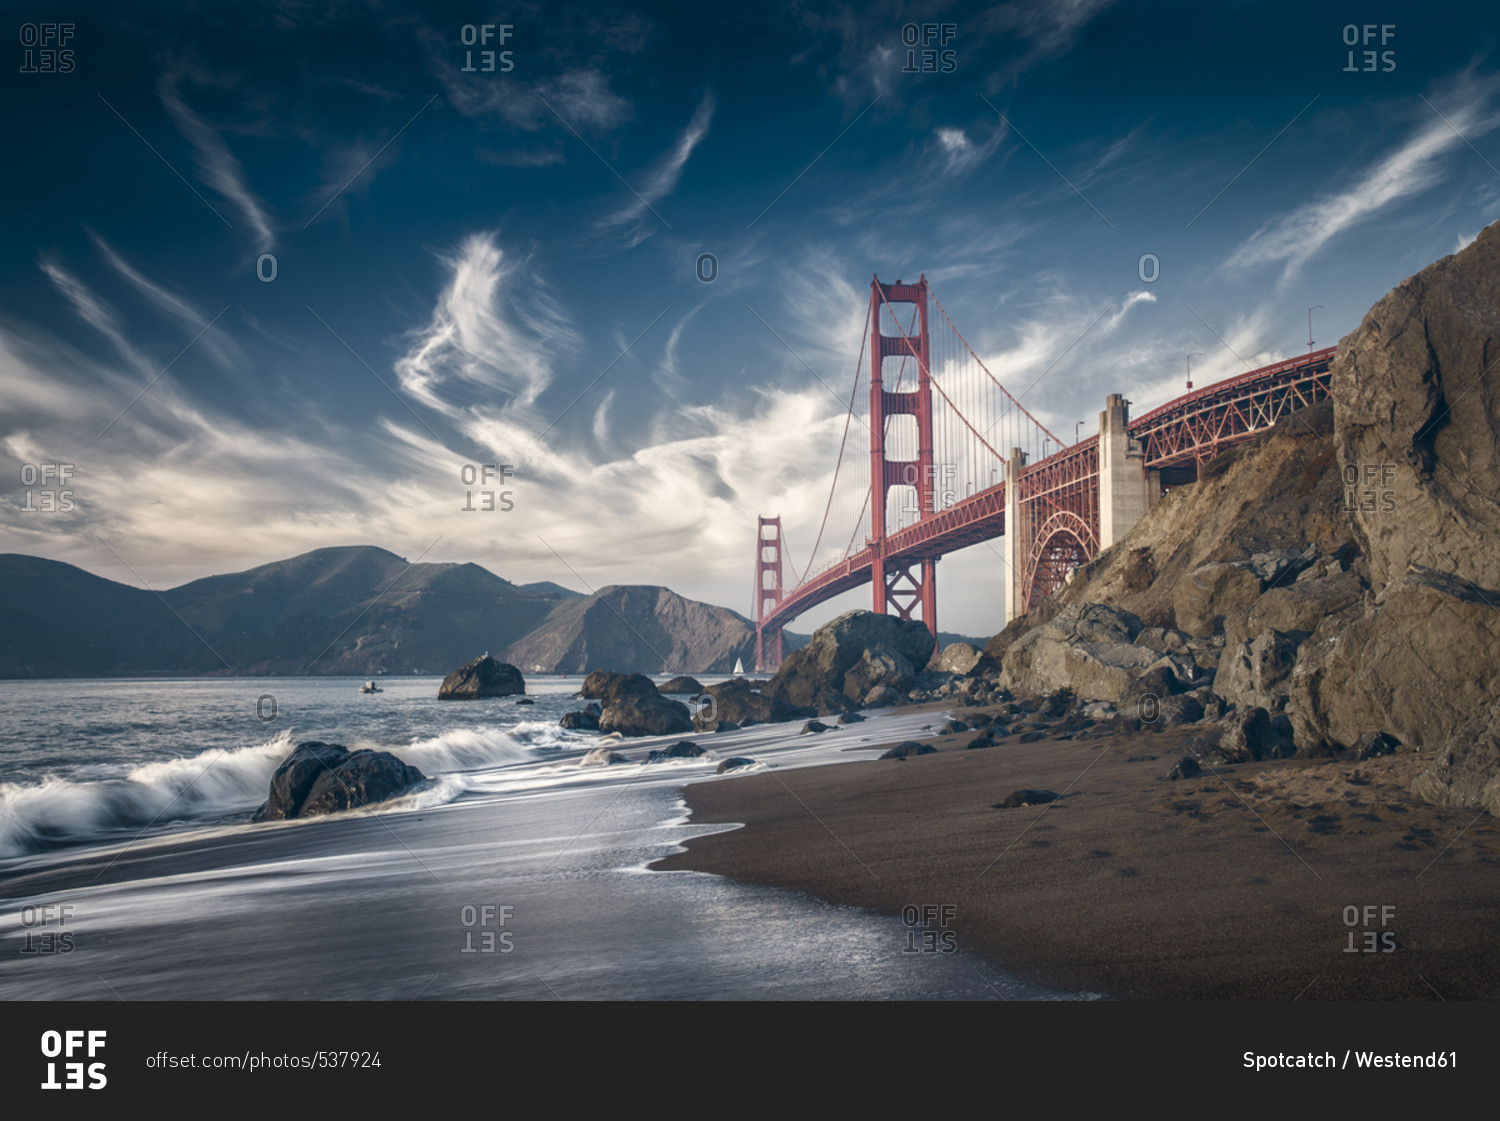 USA - California - San Francisco - beach and Golden Gate Bridge